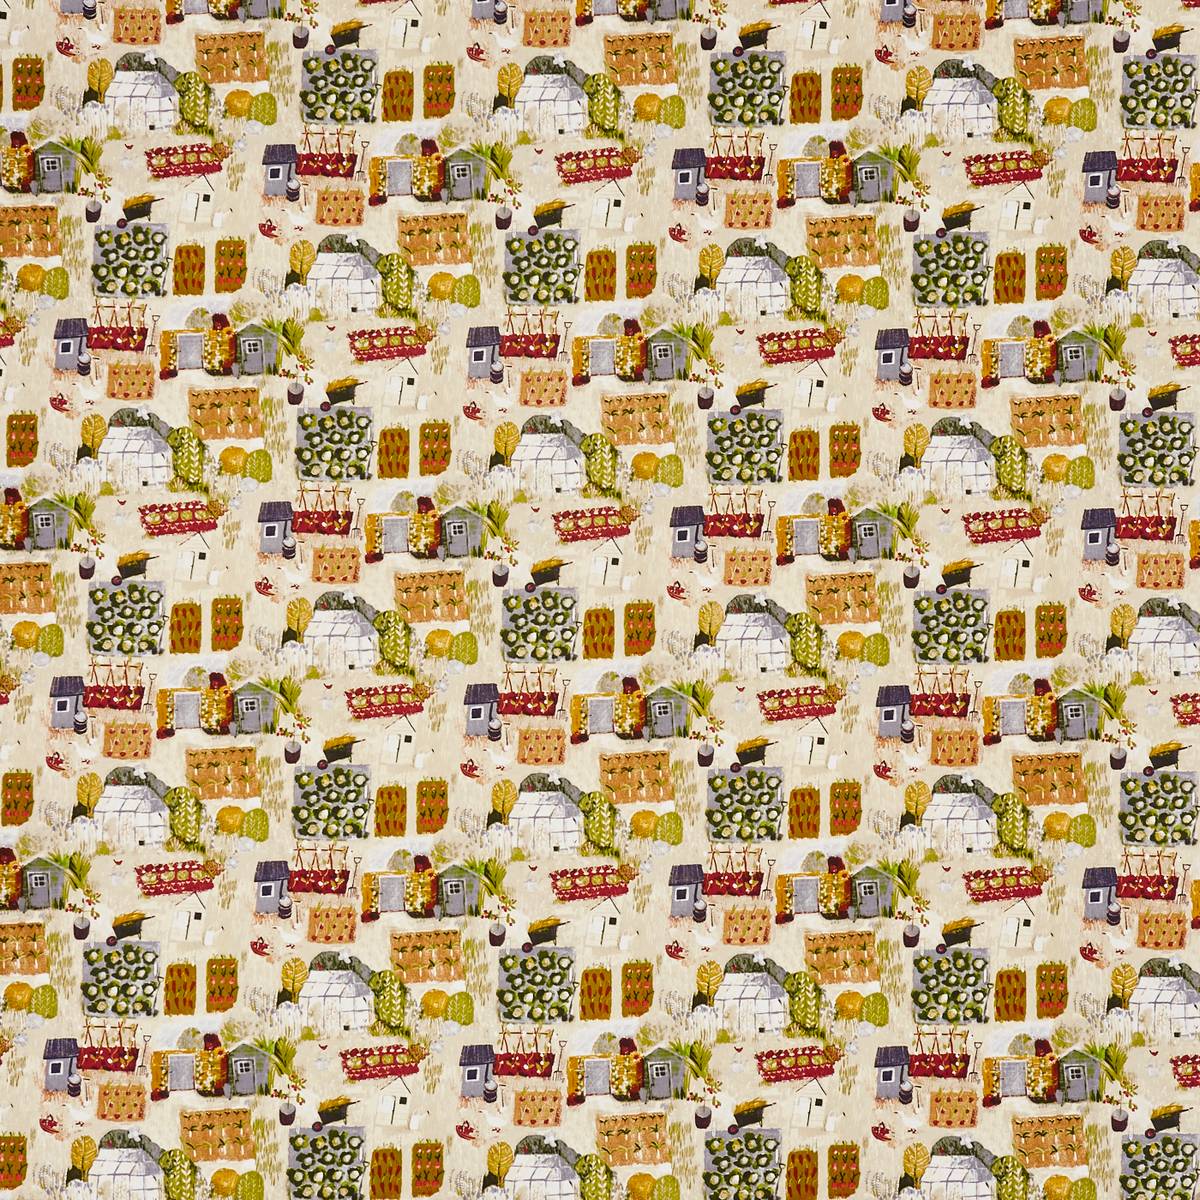 Allotment Autumn Fabric by Prestigious Textiles